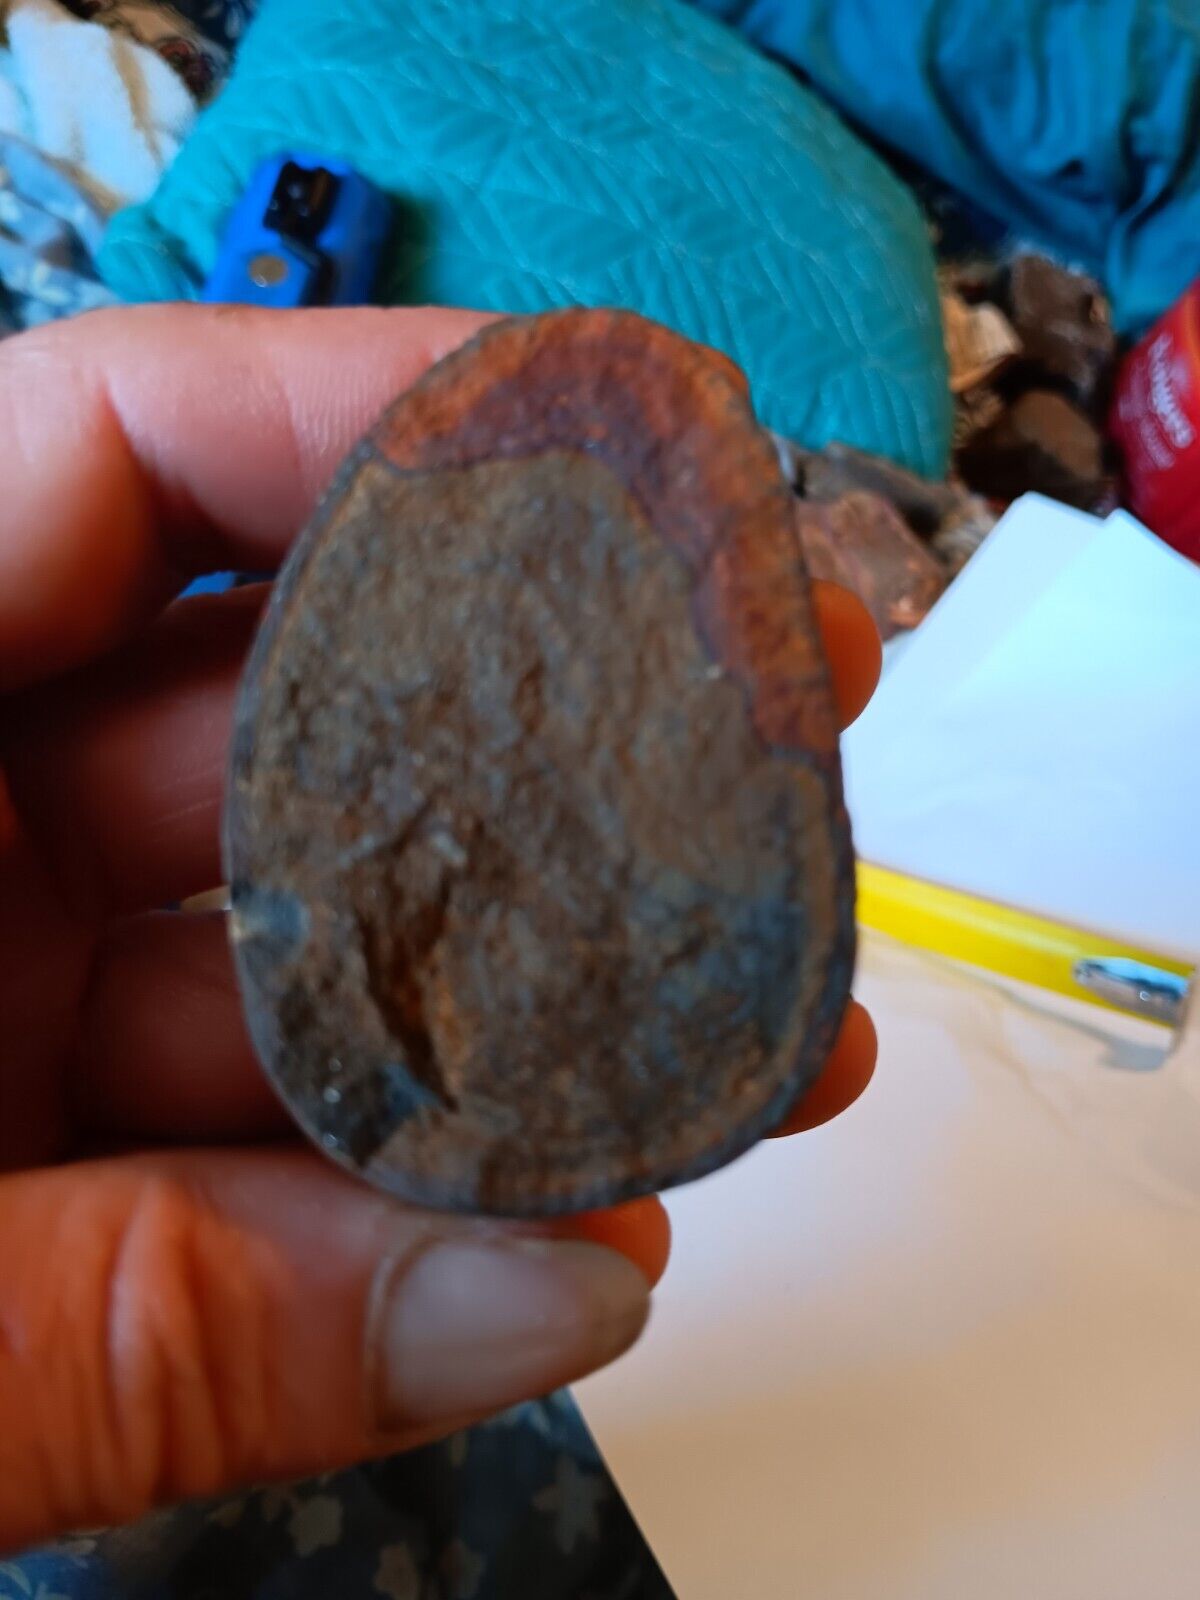 Unique Rock Looks Like A Fossilized Egg Kinda Neat